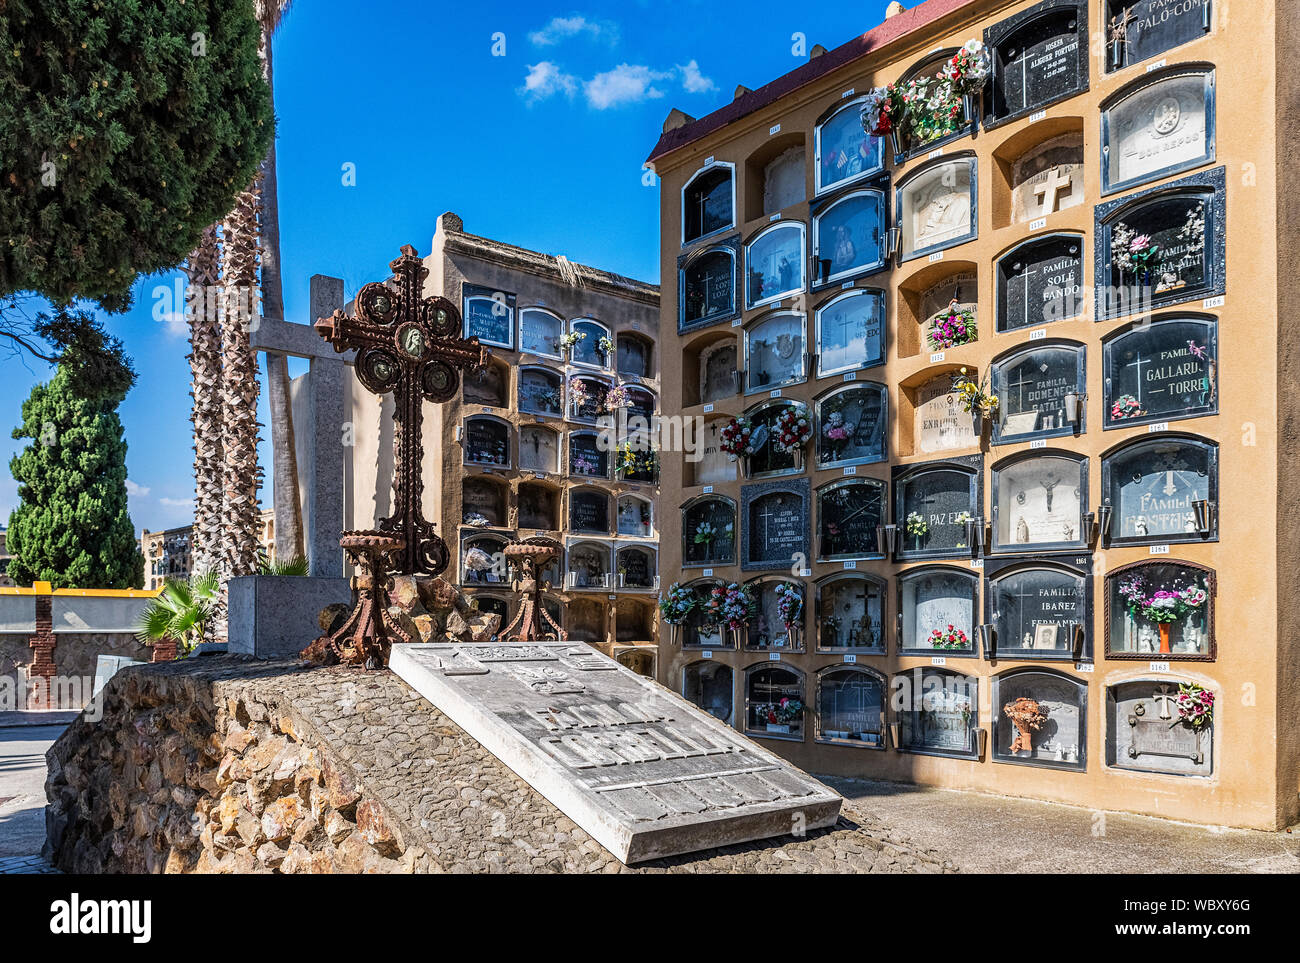 Cementeri Les Corts, Barcelona, Catalonia, Spain. Stock Photo